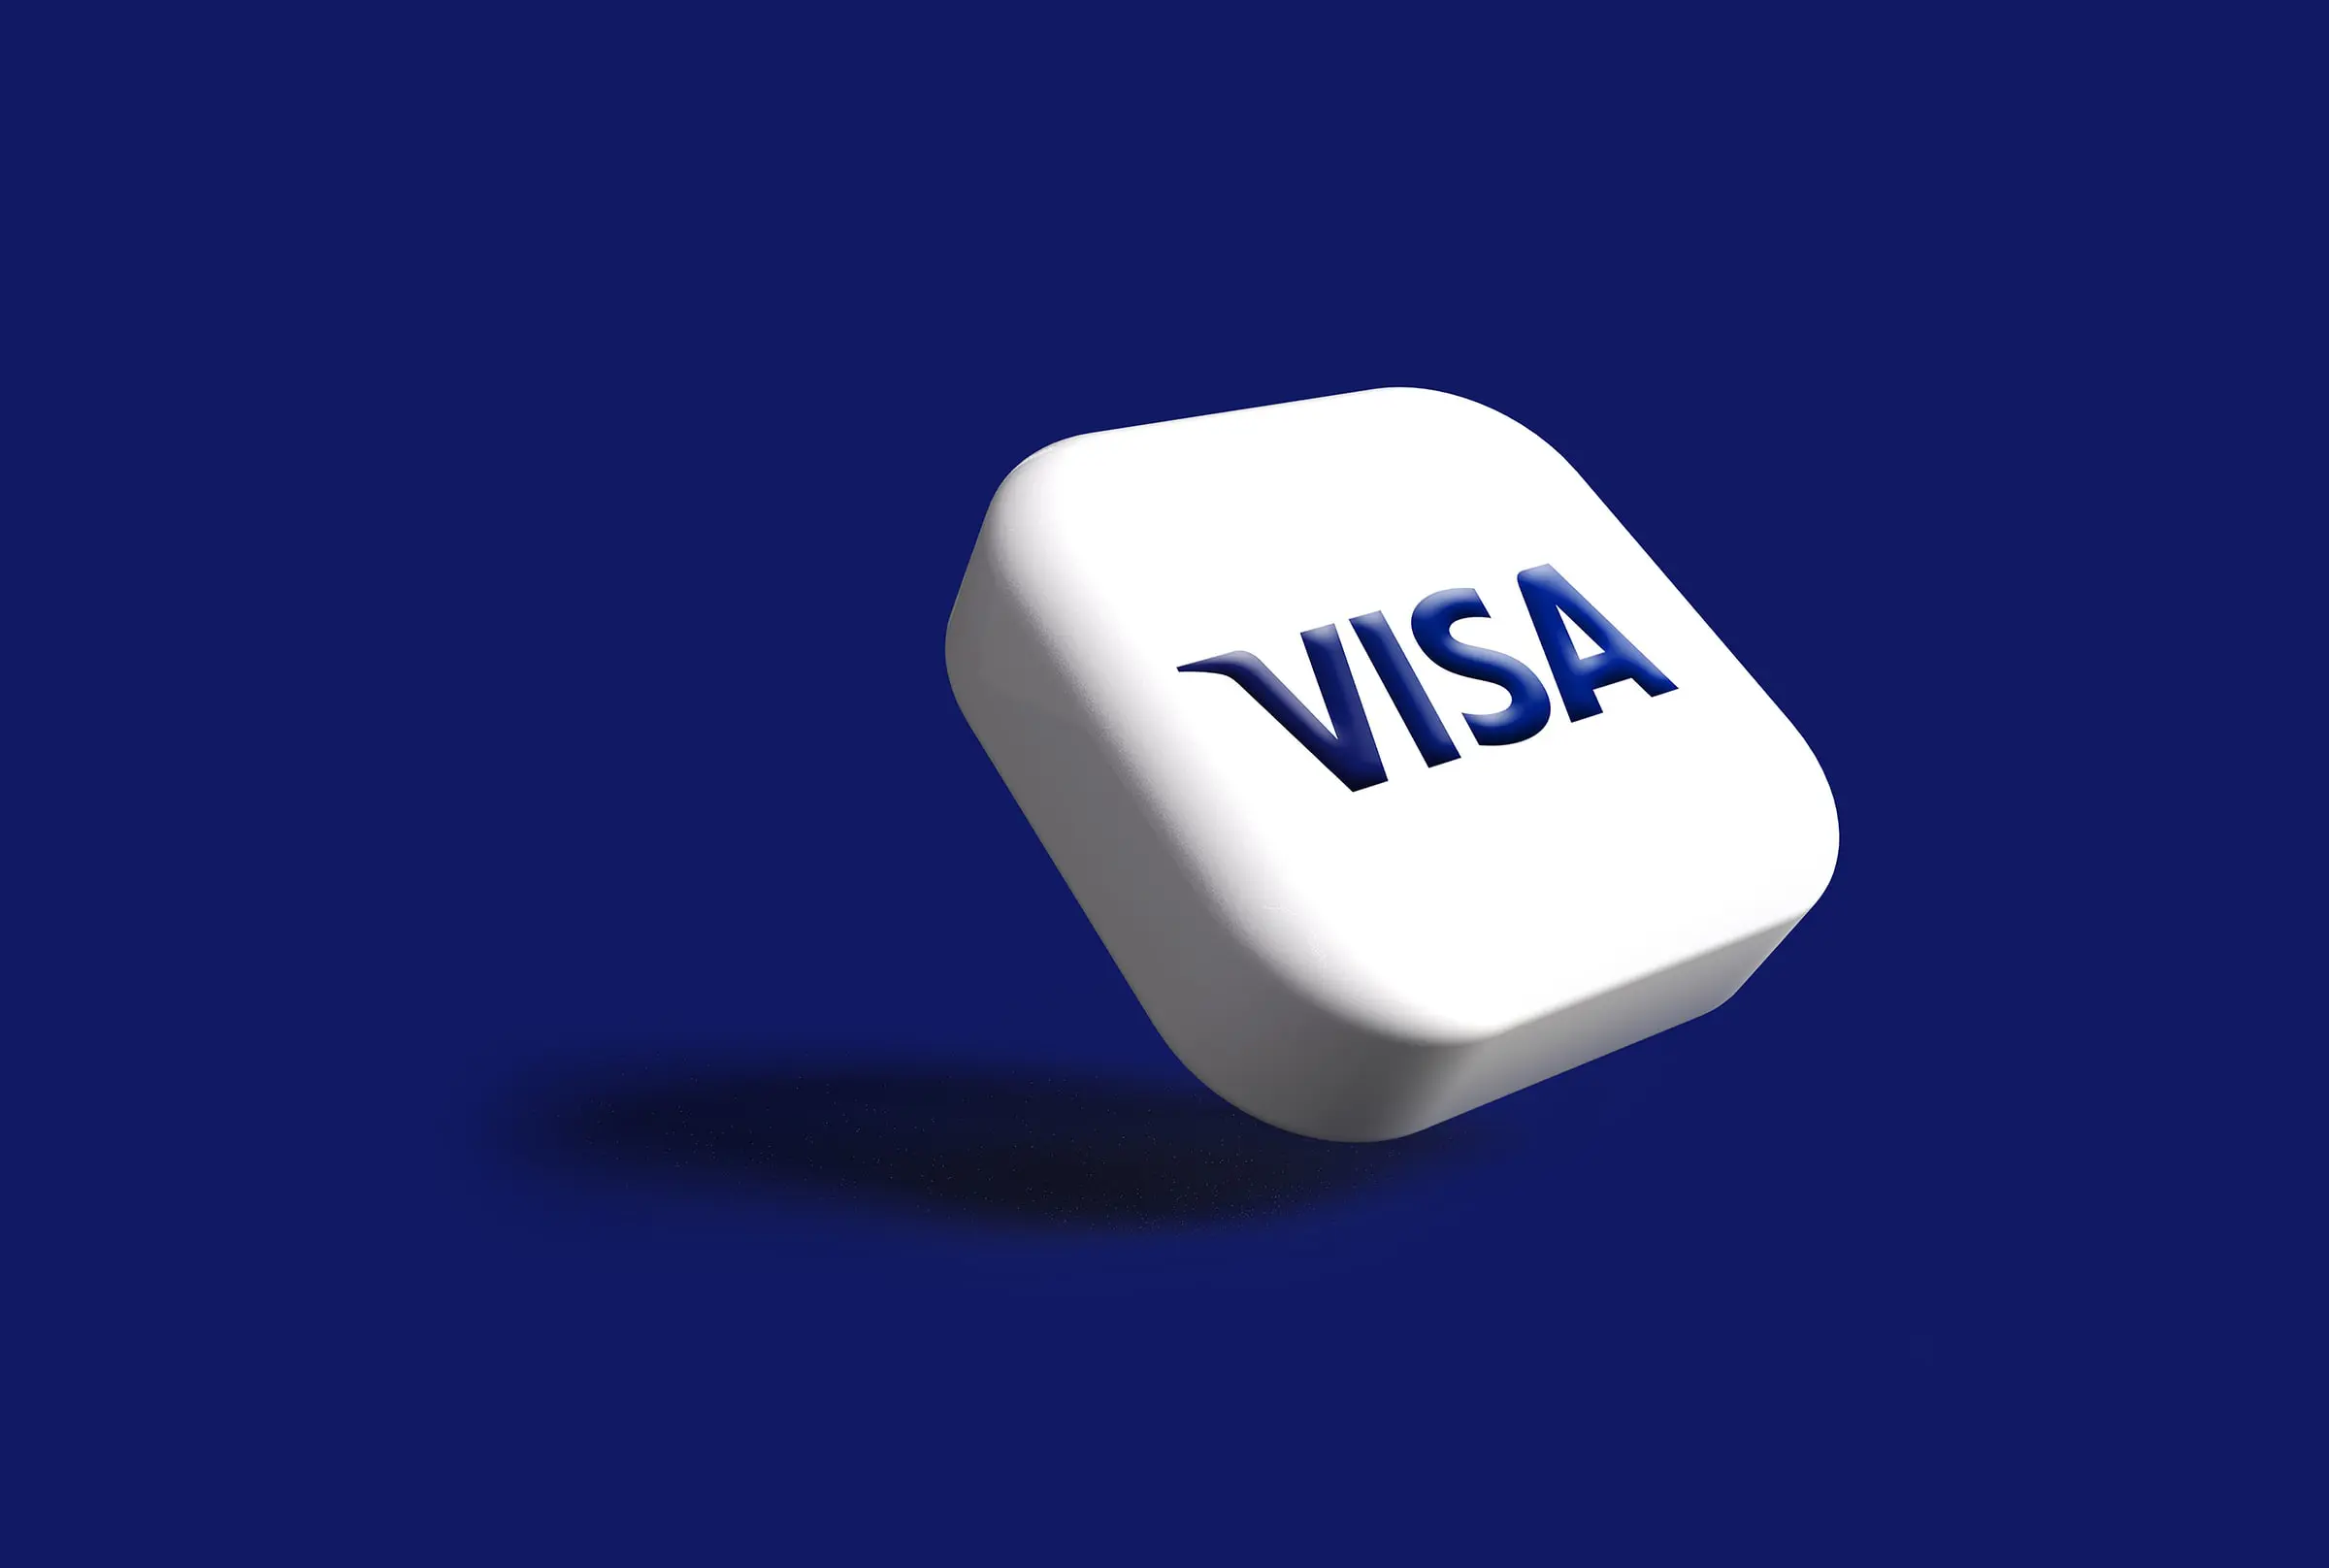 business plan for uk innovator visa